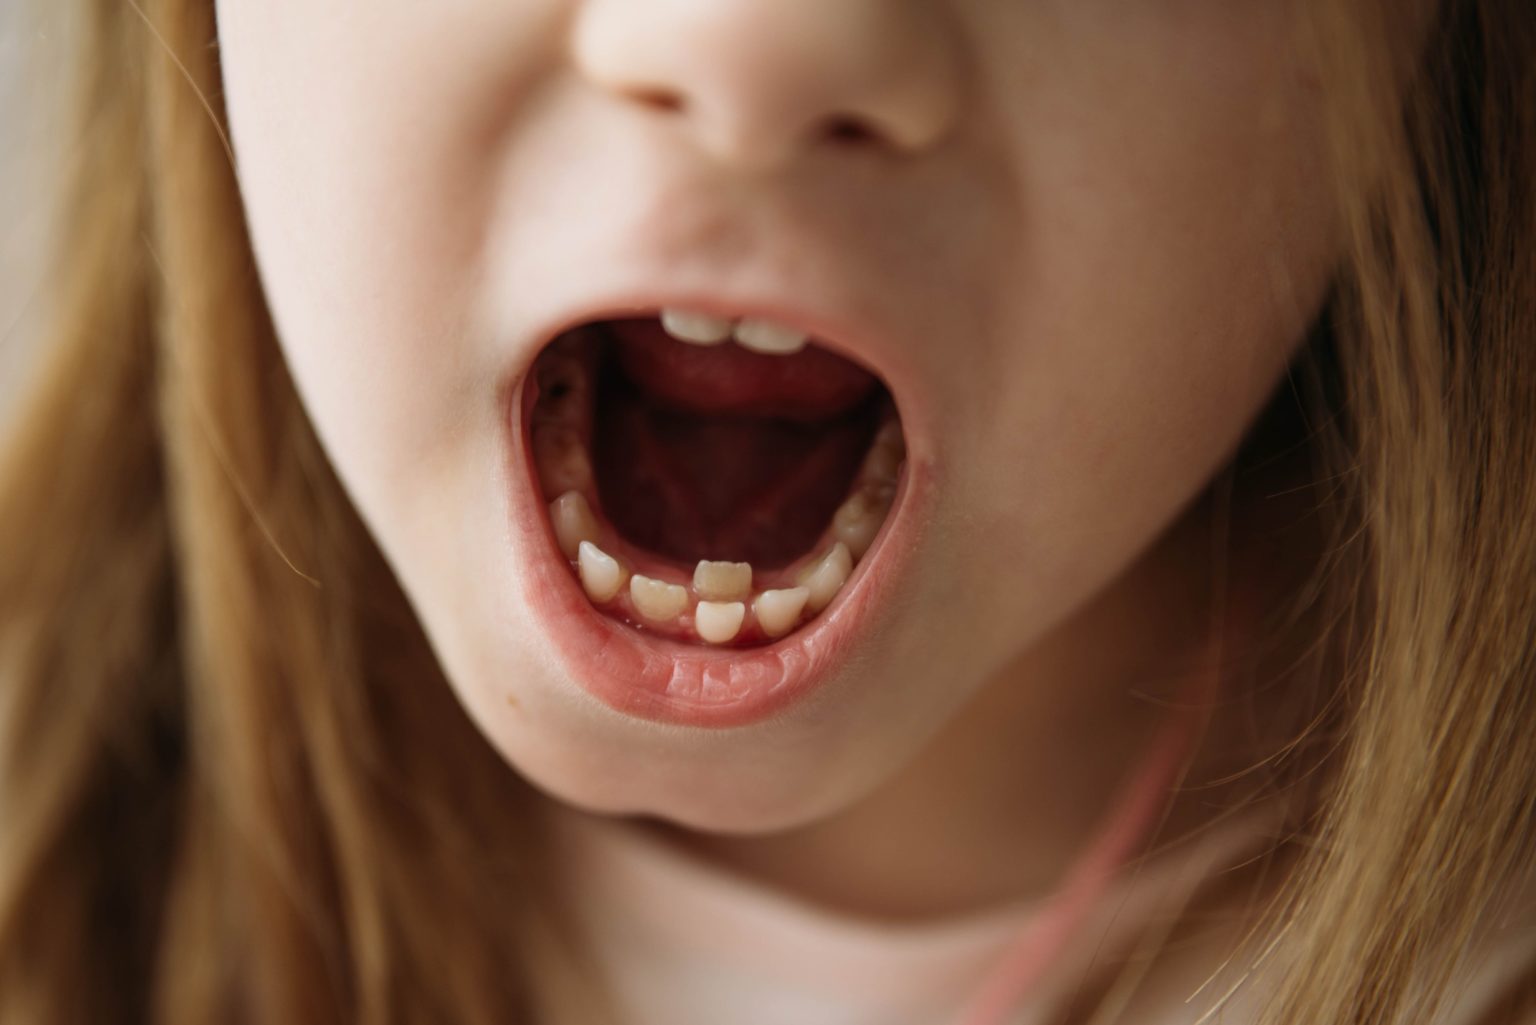 royal teeth kids conspire